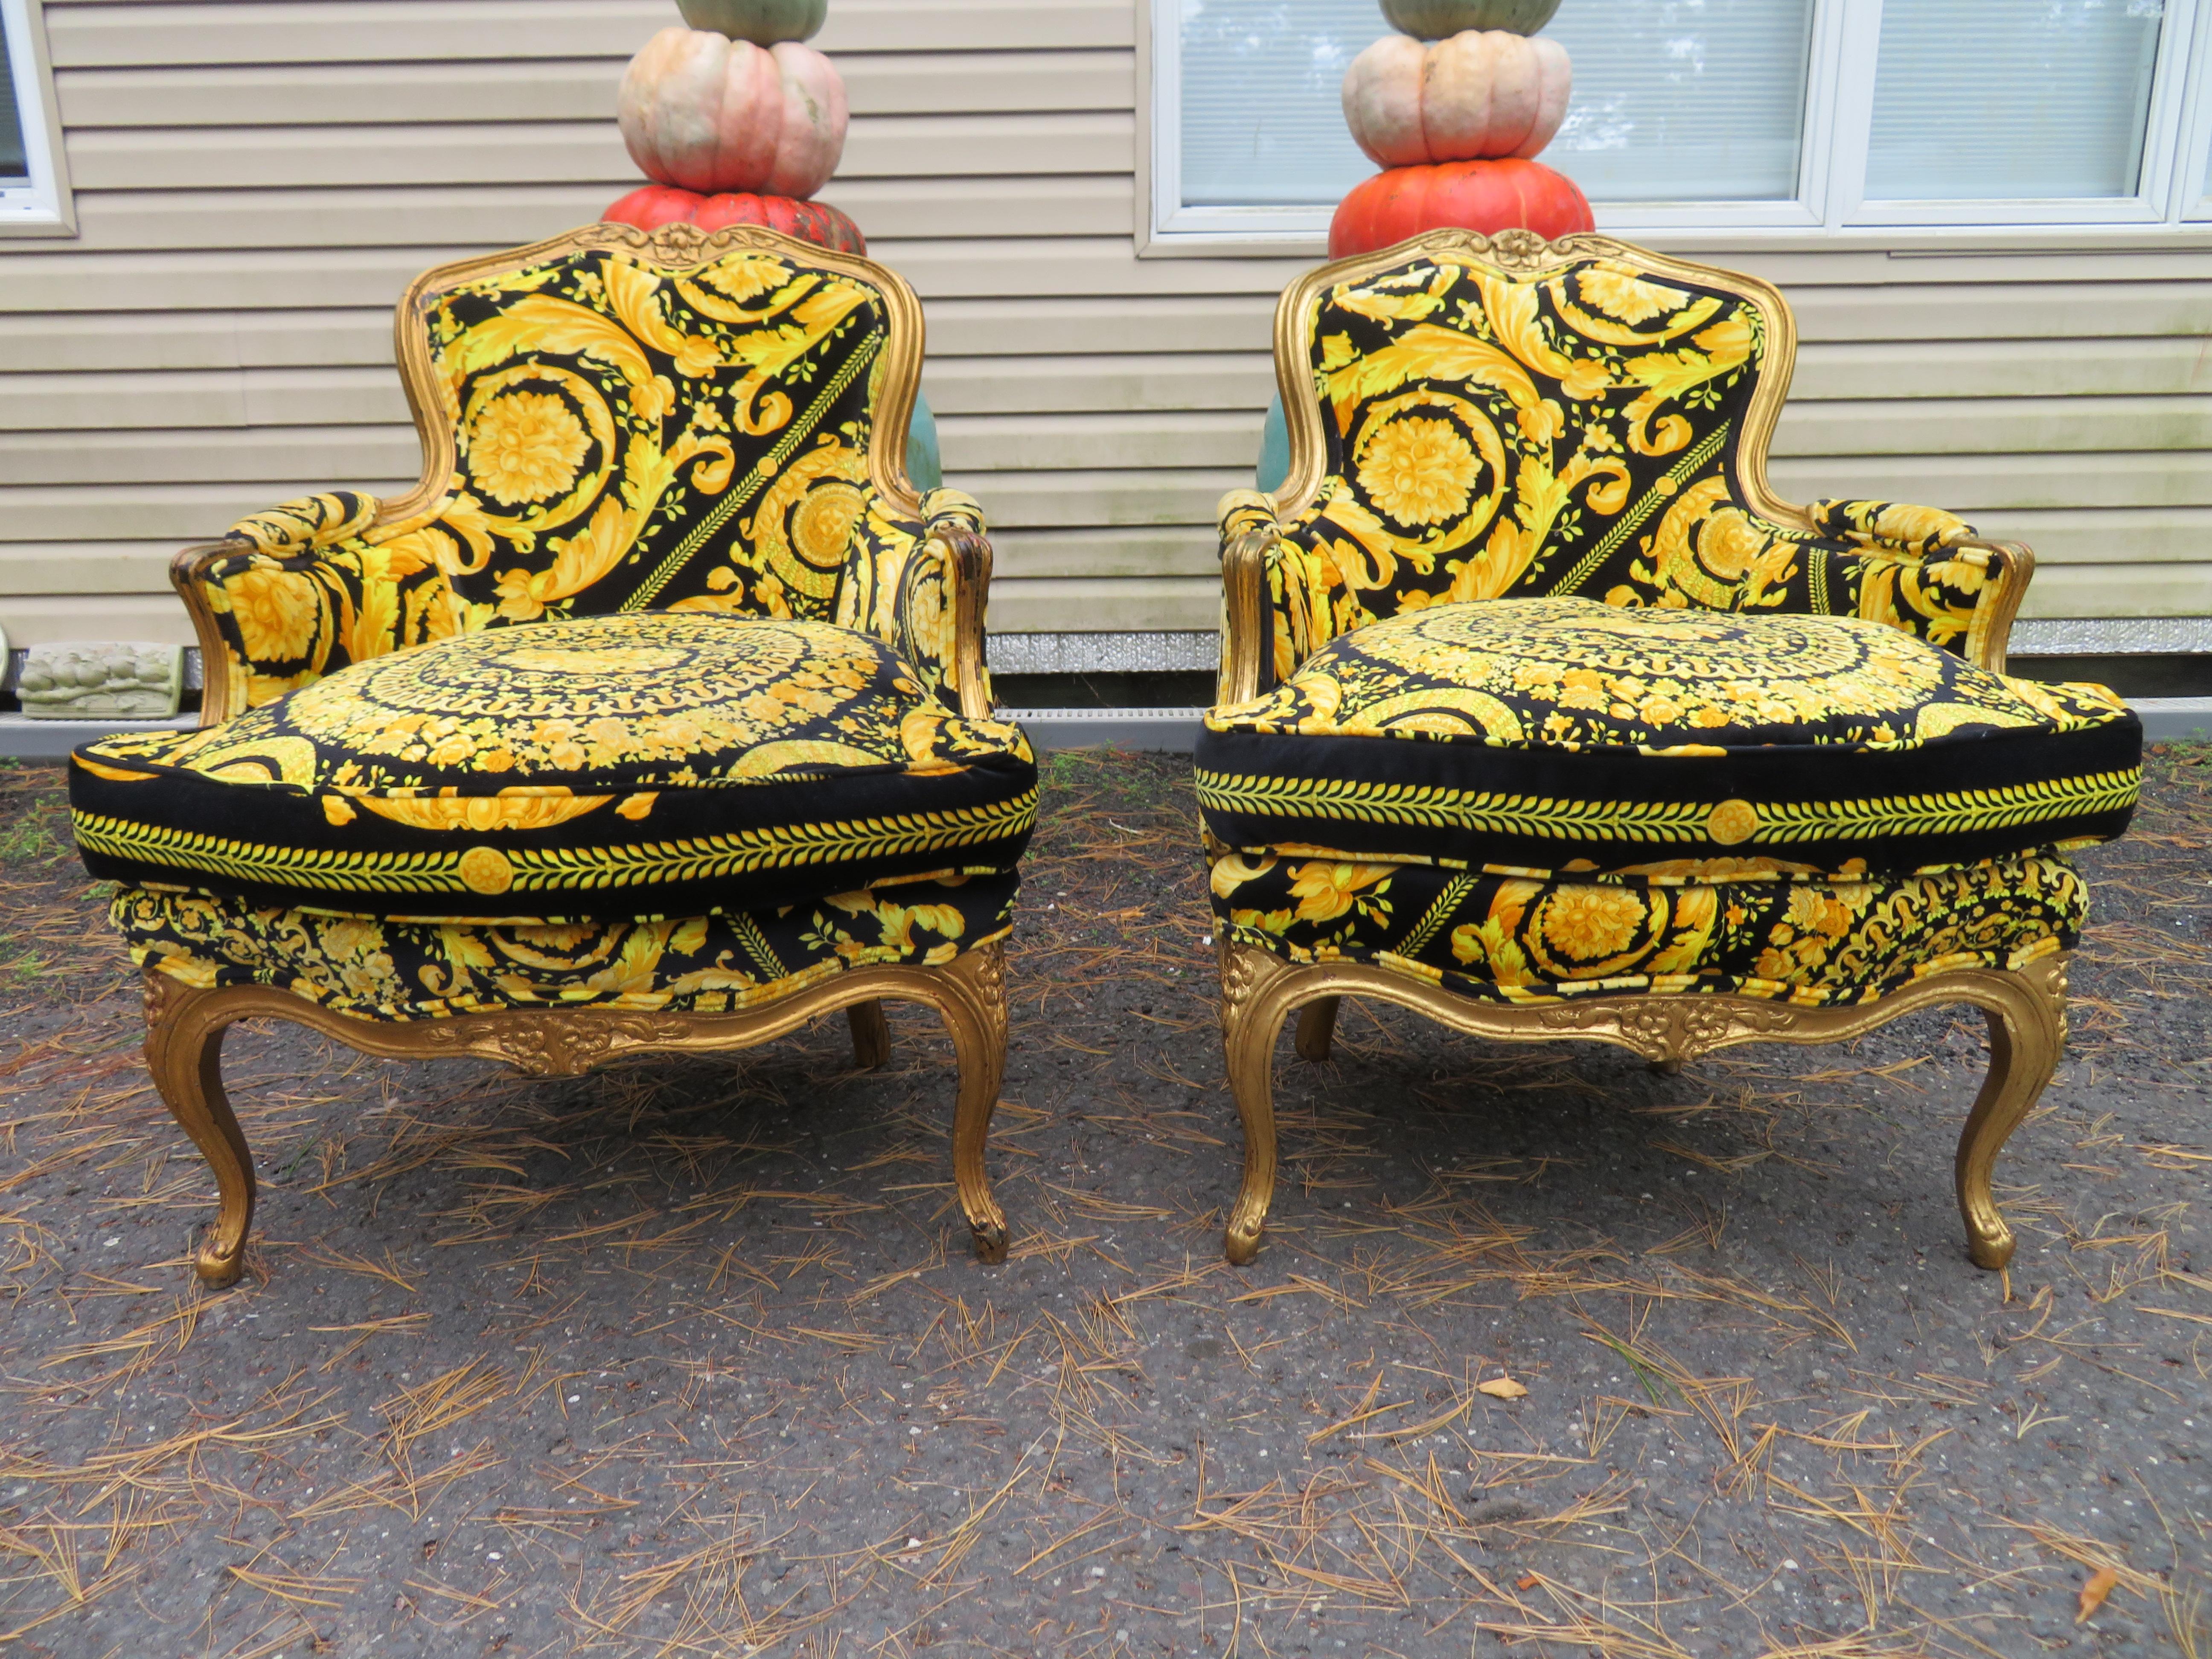 Magnifique paire de chaises sculptées de style Louis XV, dorées, avec tissu Versace personnalisé. Nous adorons la finition dorée, intentionnellement vieillie, ainsi que l'incroyable tissu en velours Versace. Ces chaises mesurent 32